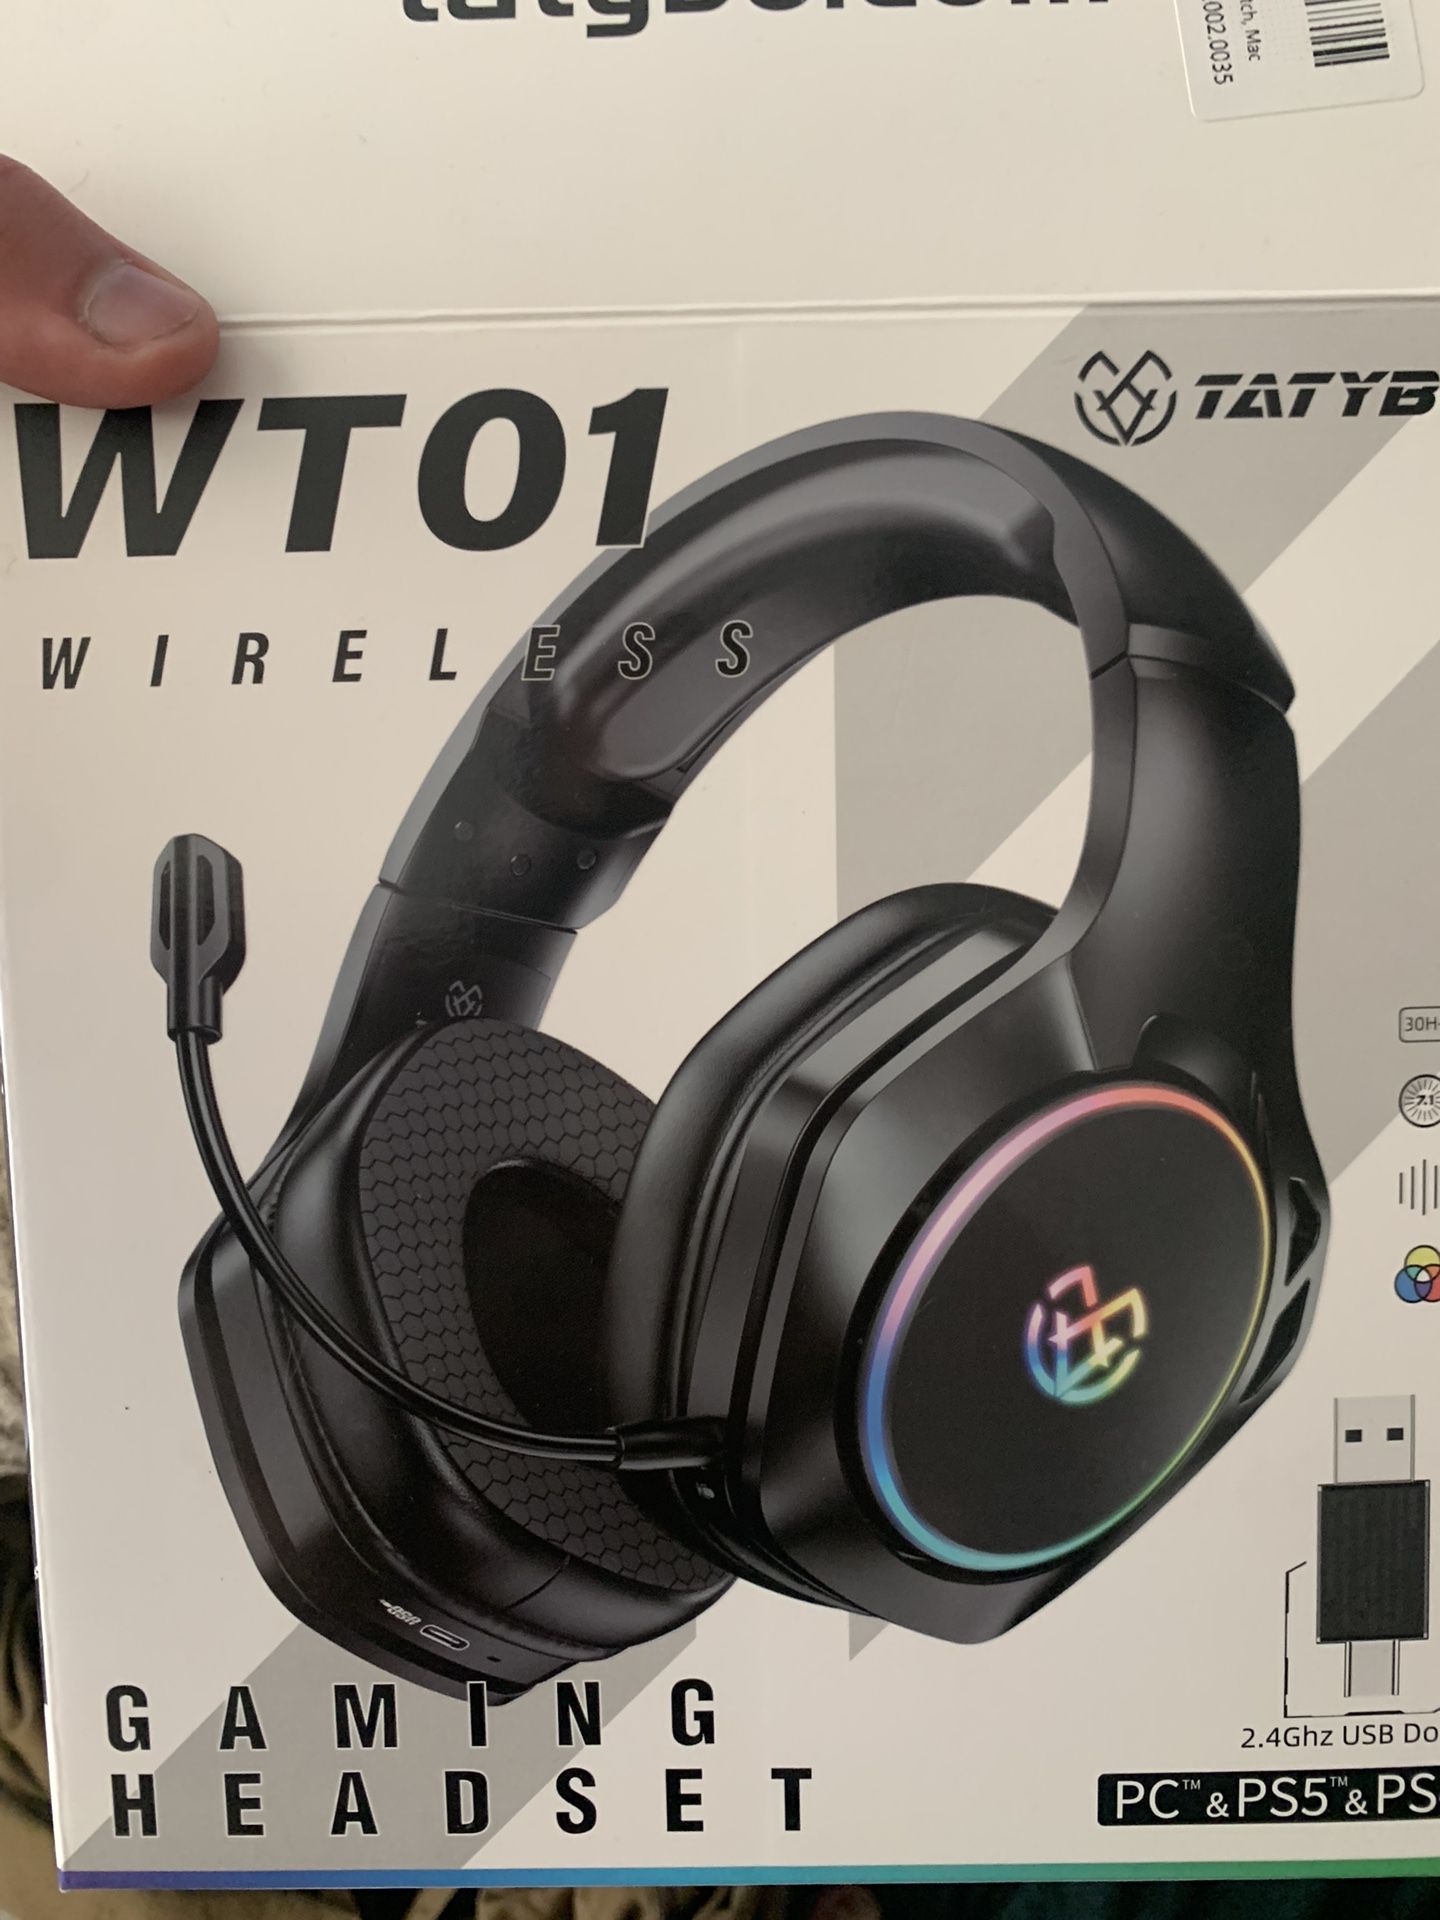 WT01 Wireless Headphones